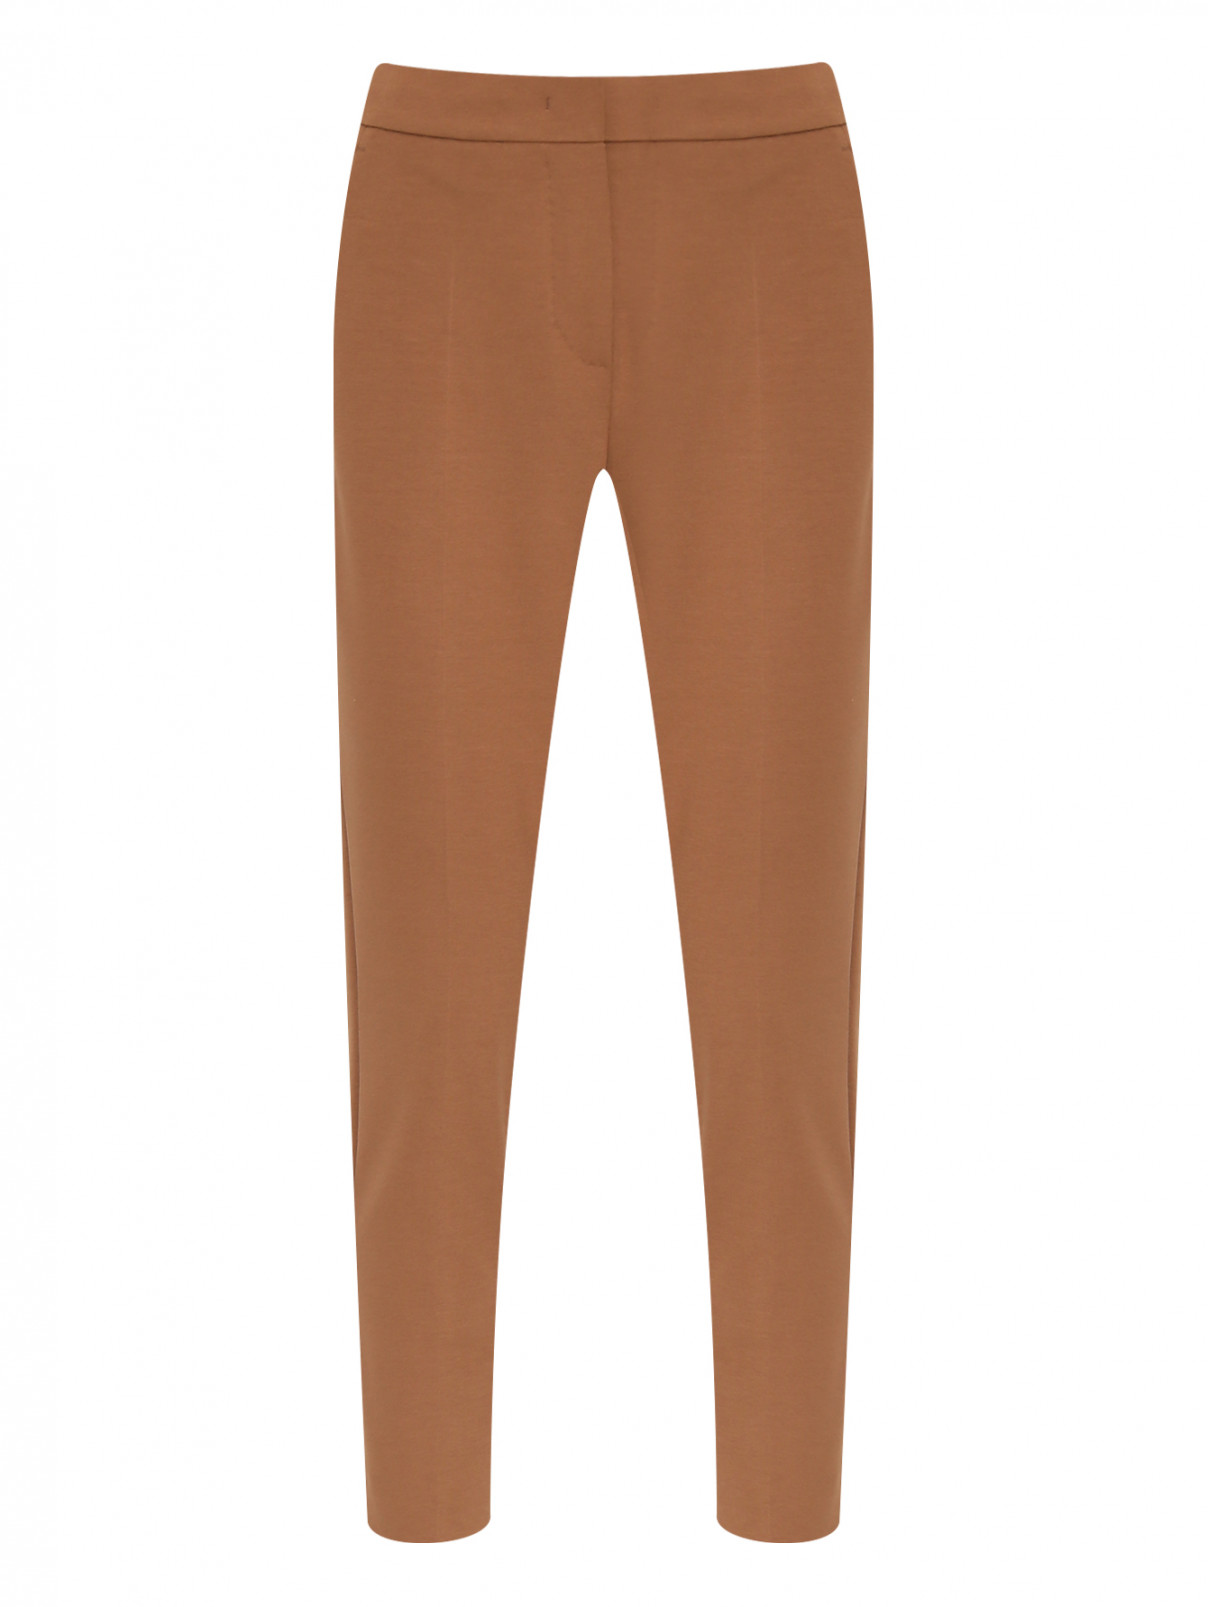 Укороченные брюки с карманами Max Mara  –  Общий вид  – Цвет:  Коричневый